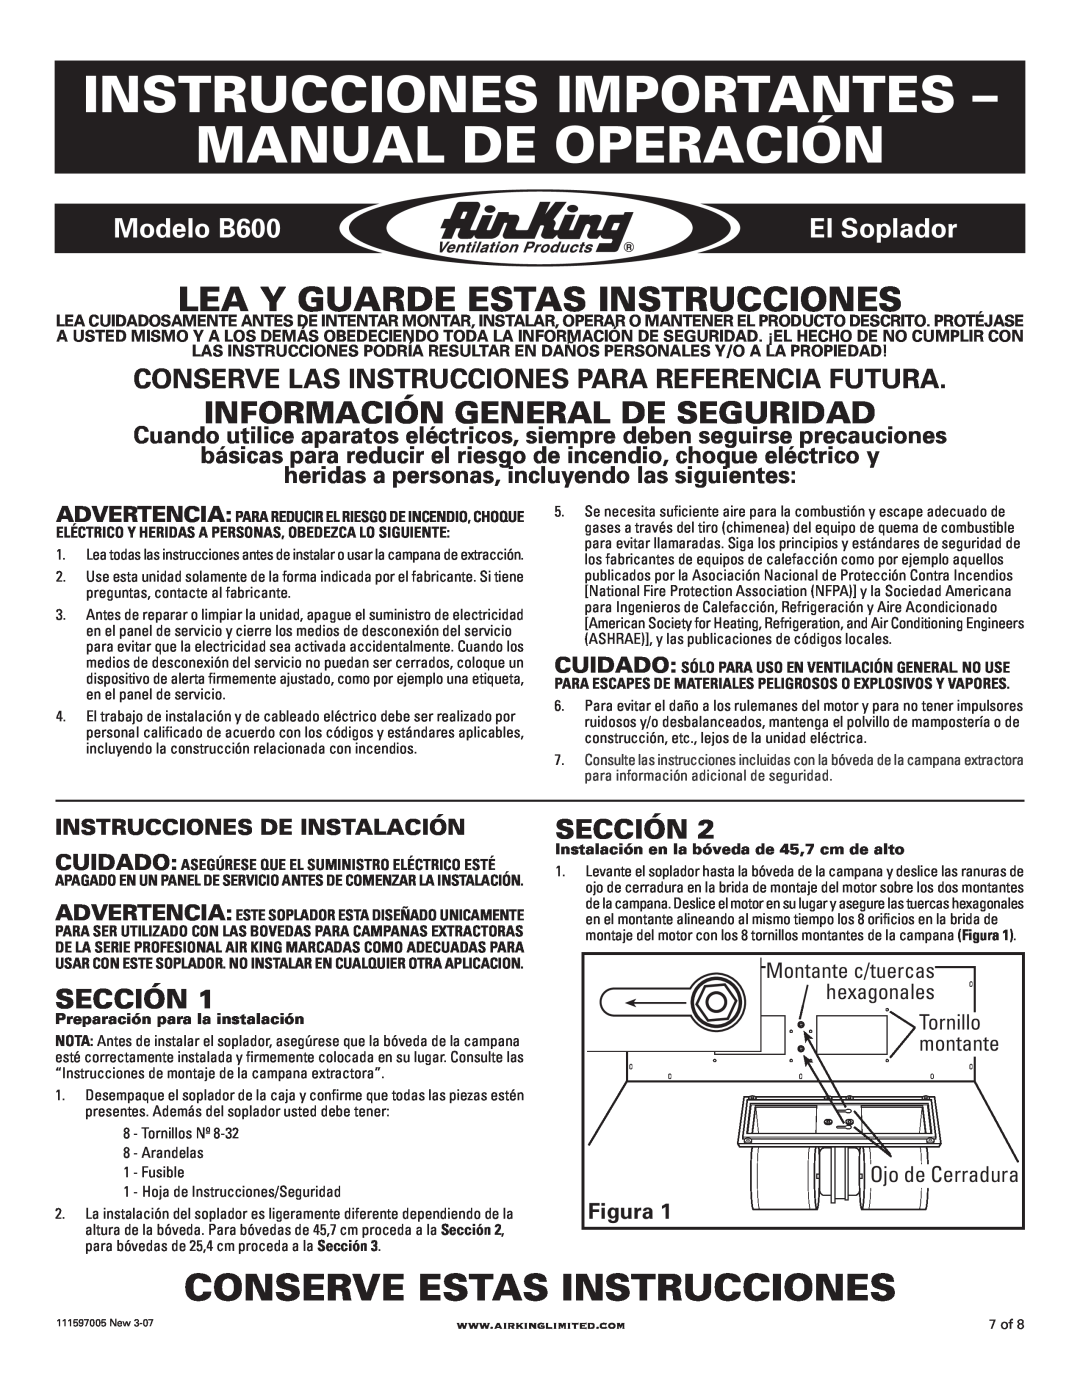 Air King Instrucciones Importantes - Manual De Operación, Conserve Estas Instrucciones, Modelo B600, El Soplador 